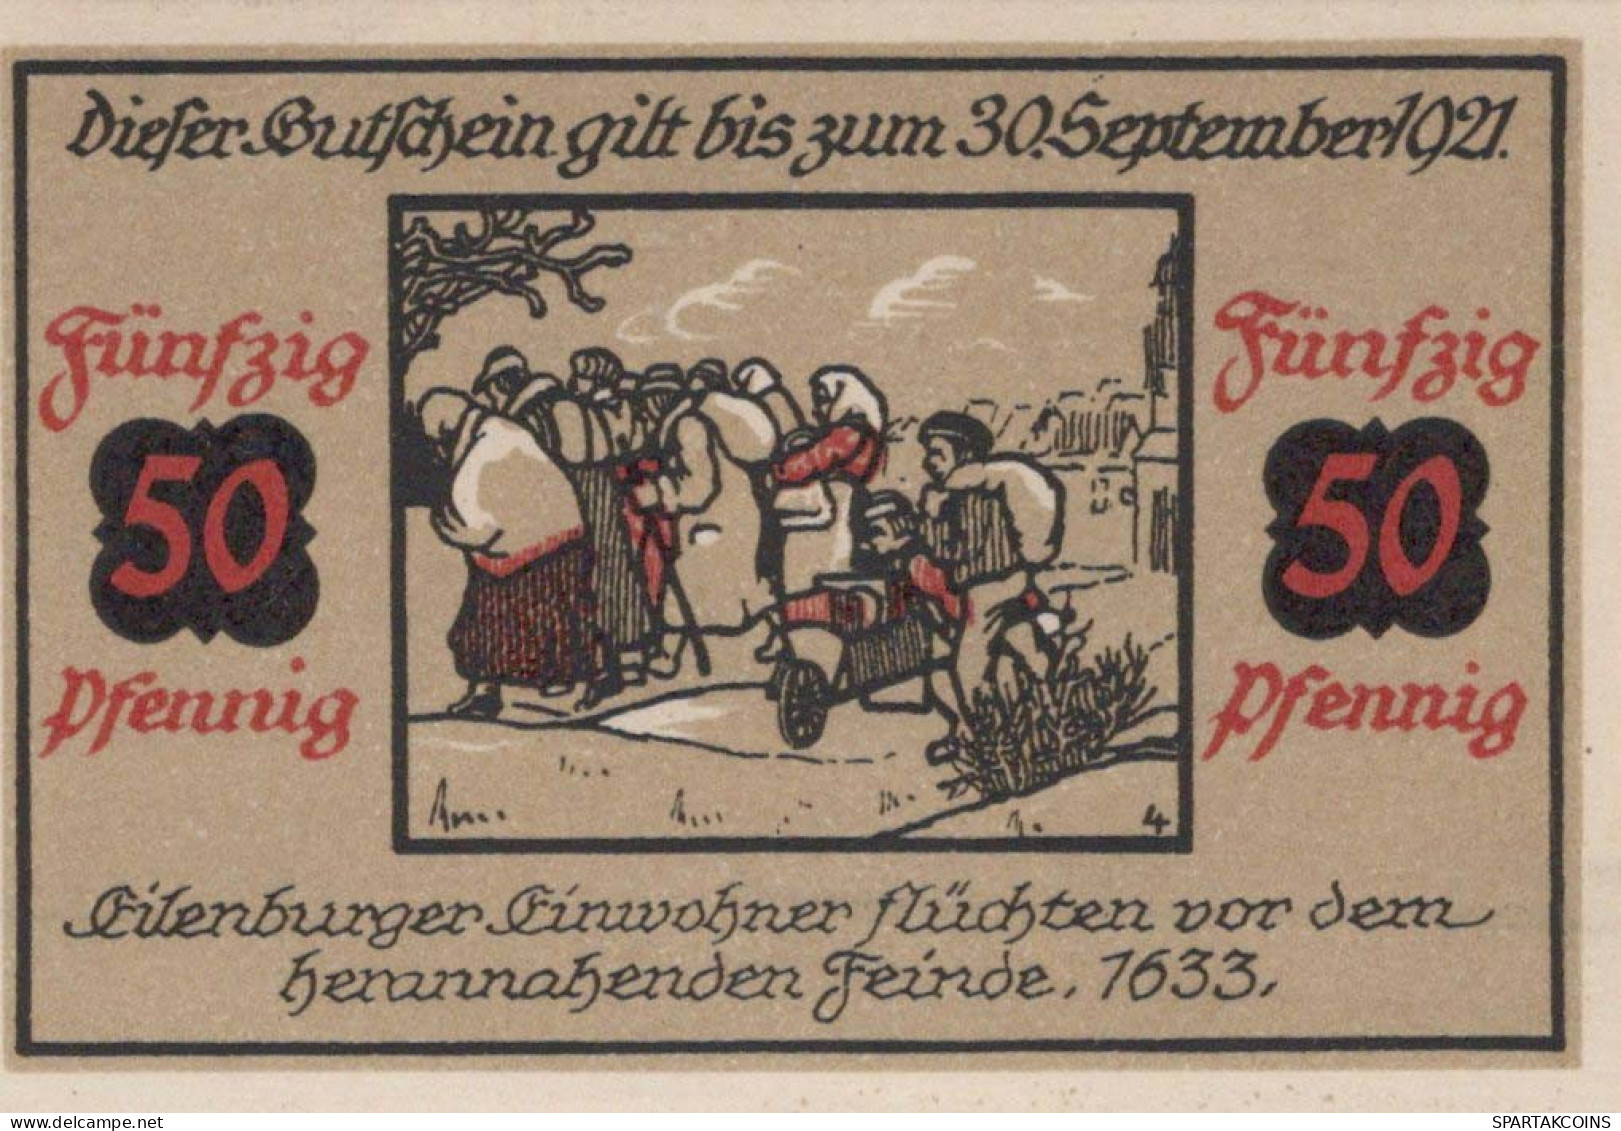 50 PFENNIG 1921 Stadt EILENBURG Saxony UNC DEUTSCHLAND Notgeld Banknote #PB080 - [11] Local Banknote Issues